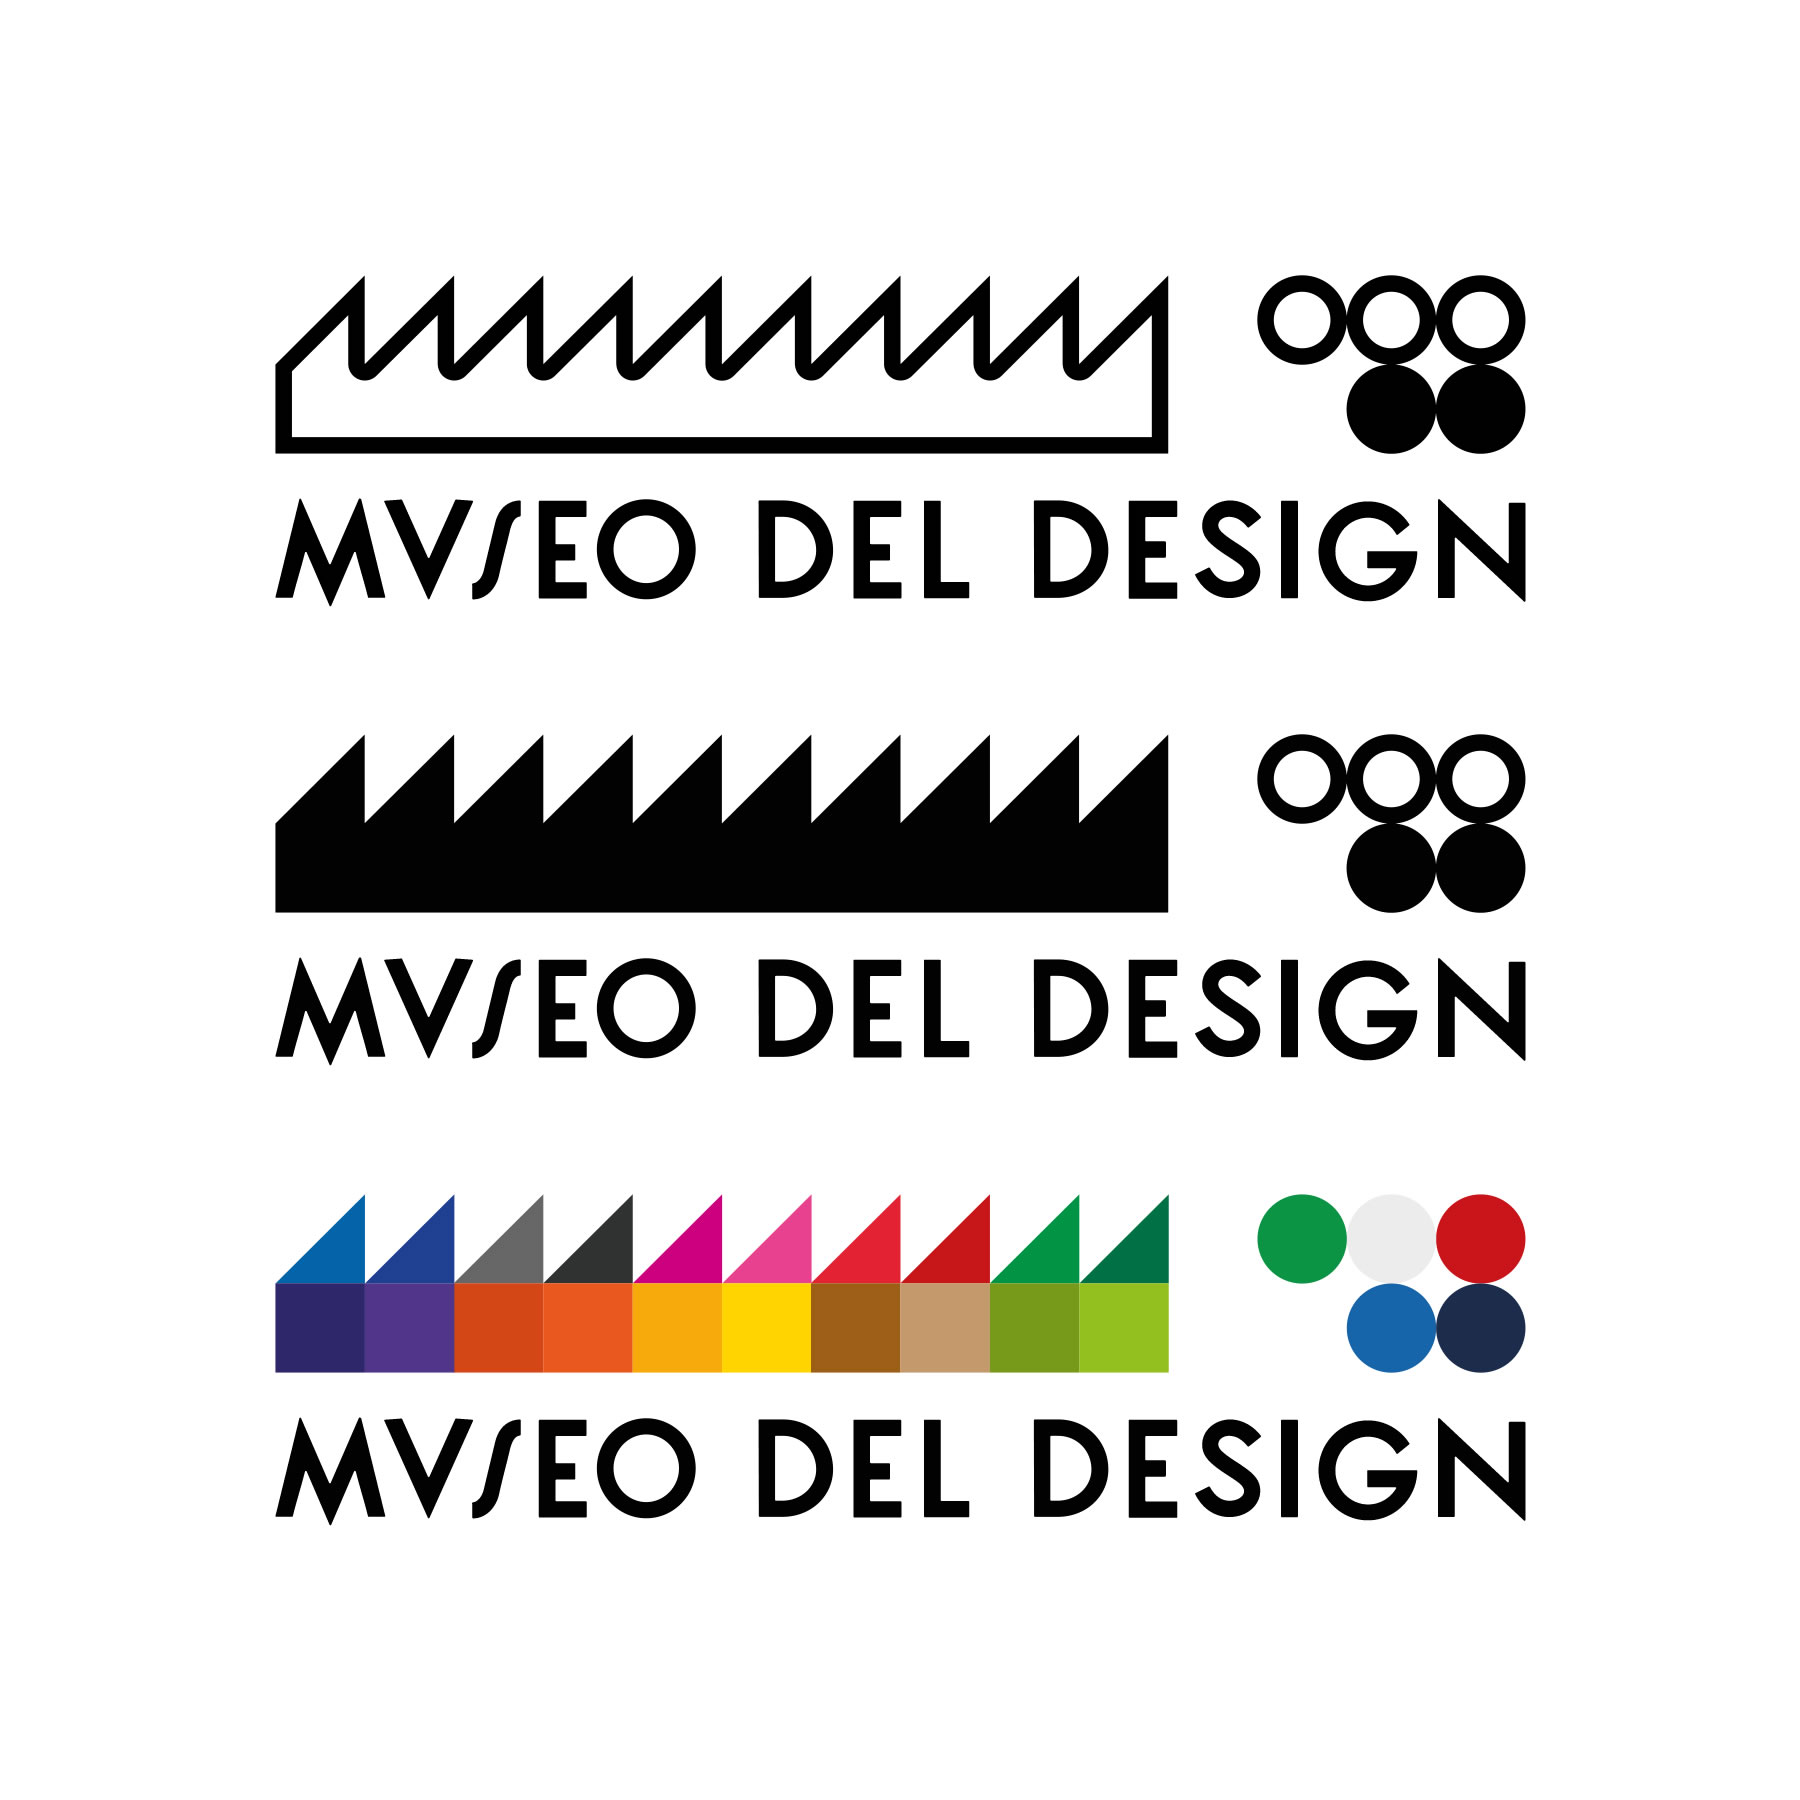 Museo del Design logo variations